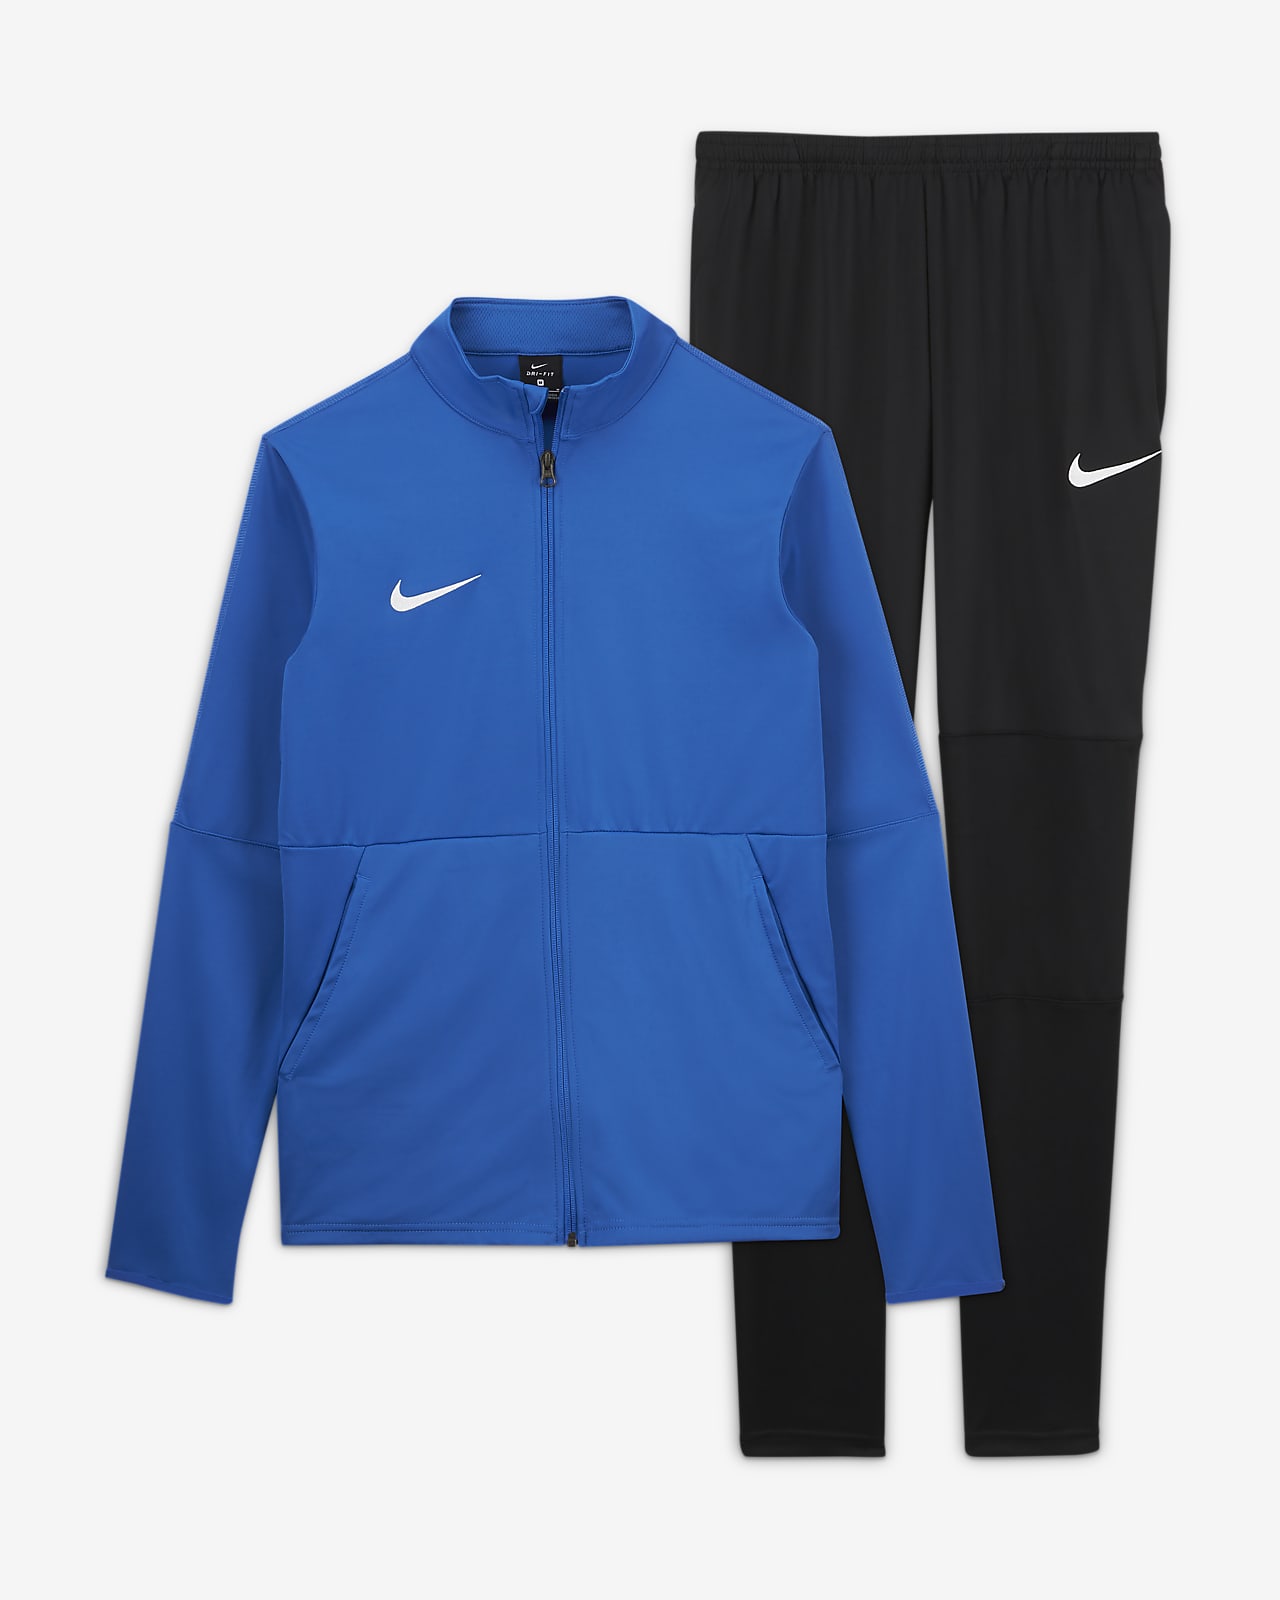 Nike Dri-FIT Men's Football Tracksuit 